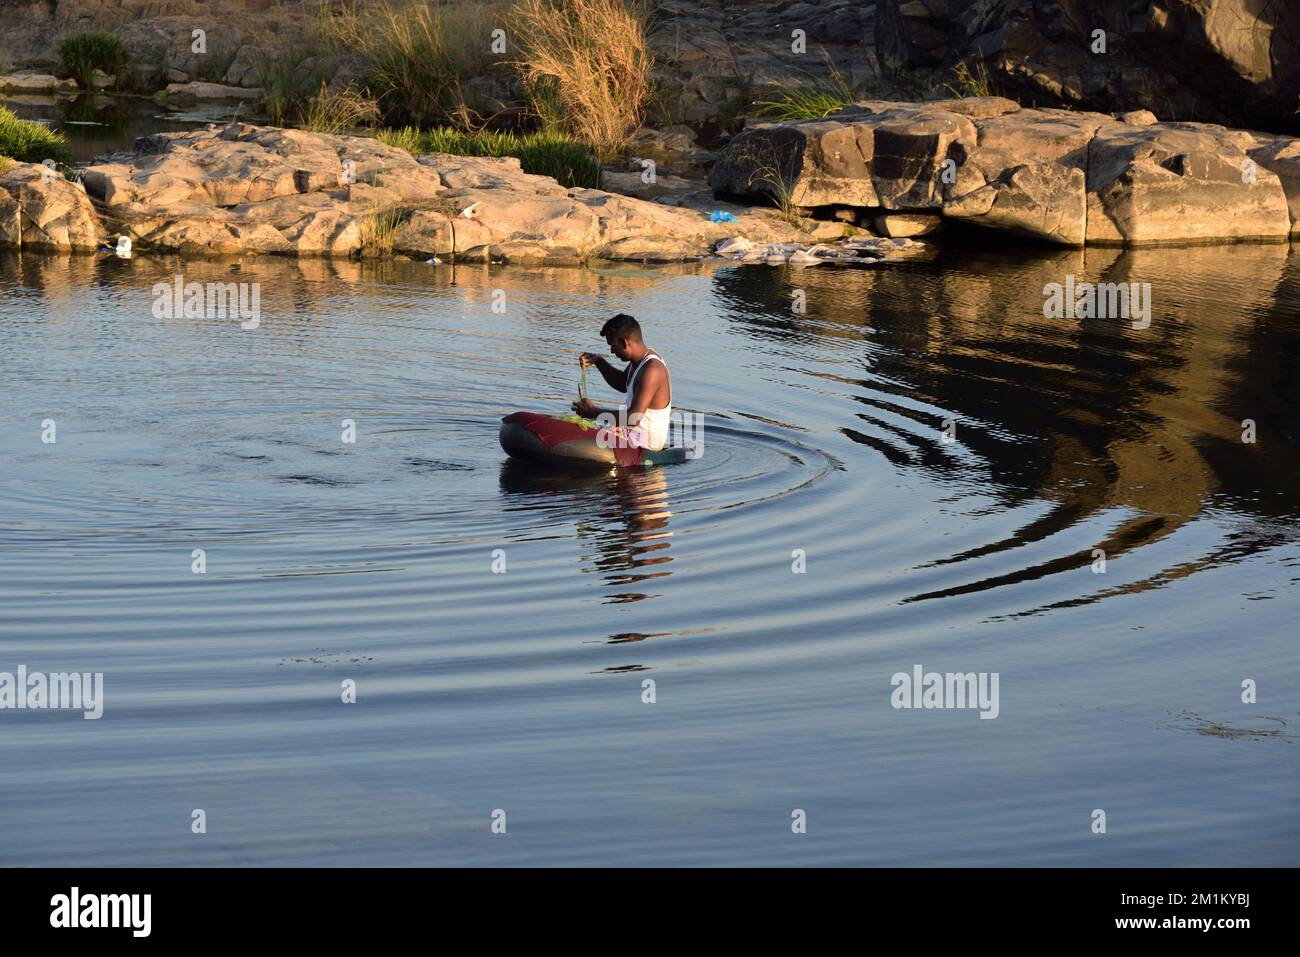 Fisherman fishing in tyre tube boat in river, Ghadoi, Valsad, Gujarat, India, Asia Stock Photo